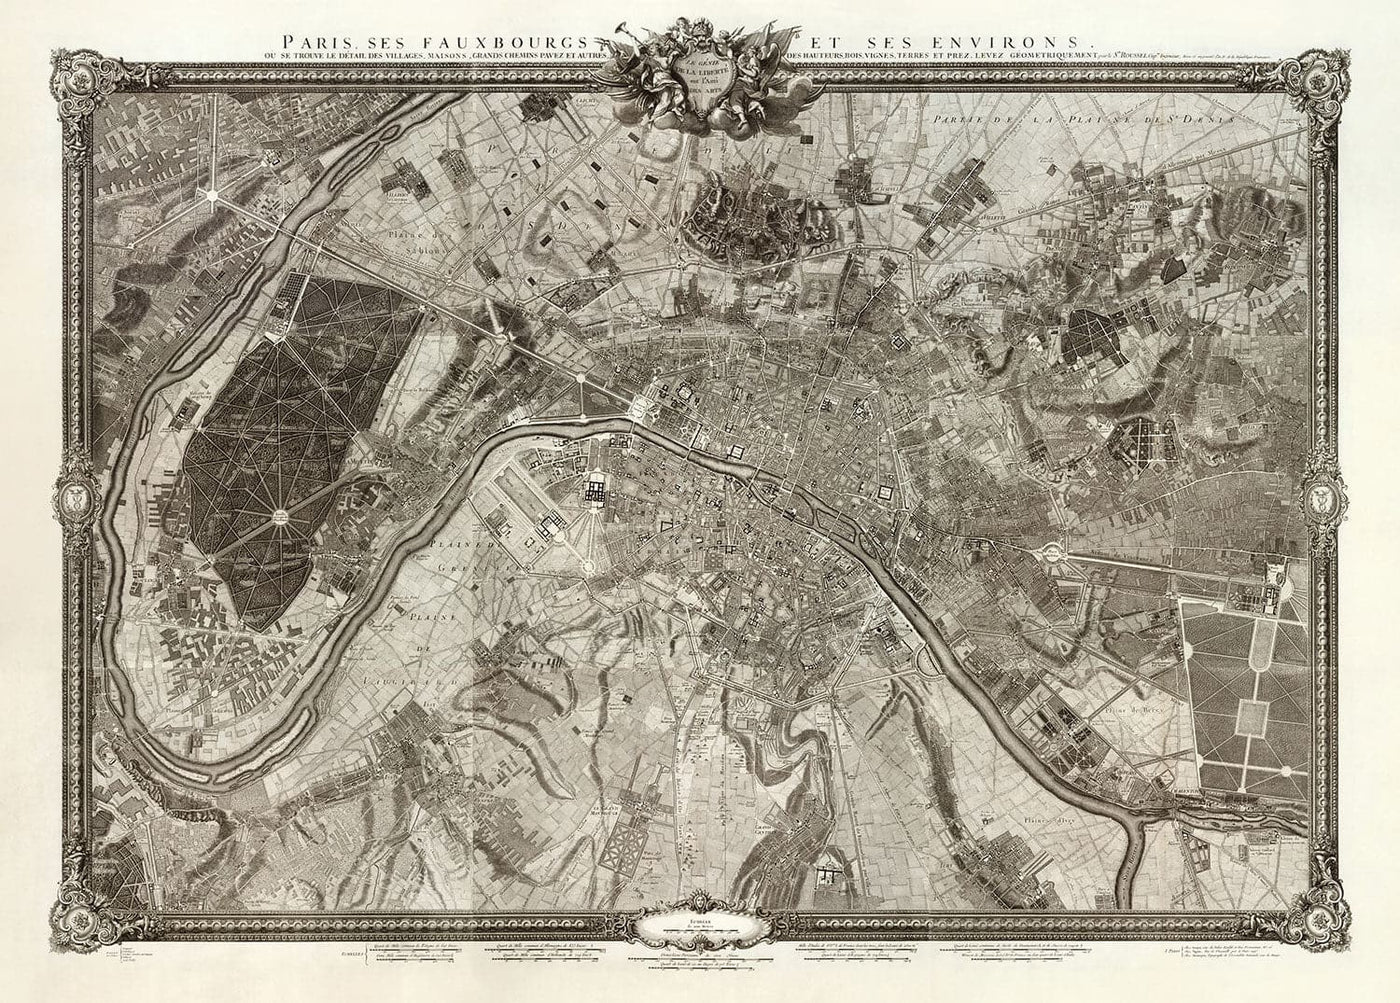 Seltene alte Karte von Paris, 1795 von Roussel - 18. Jahrhundert Louvre, Les Invalides, Champs-Élysées